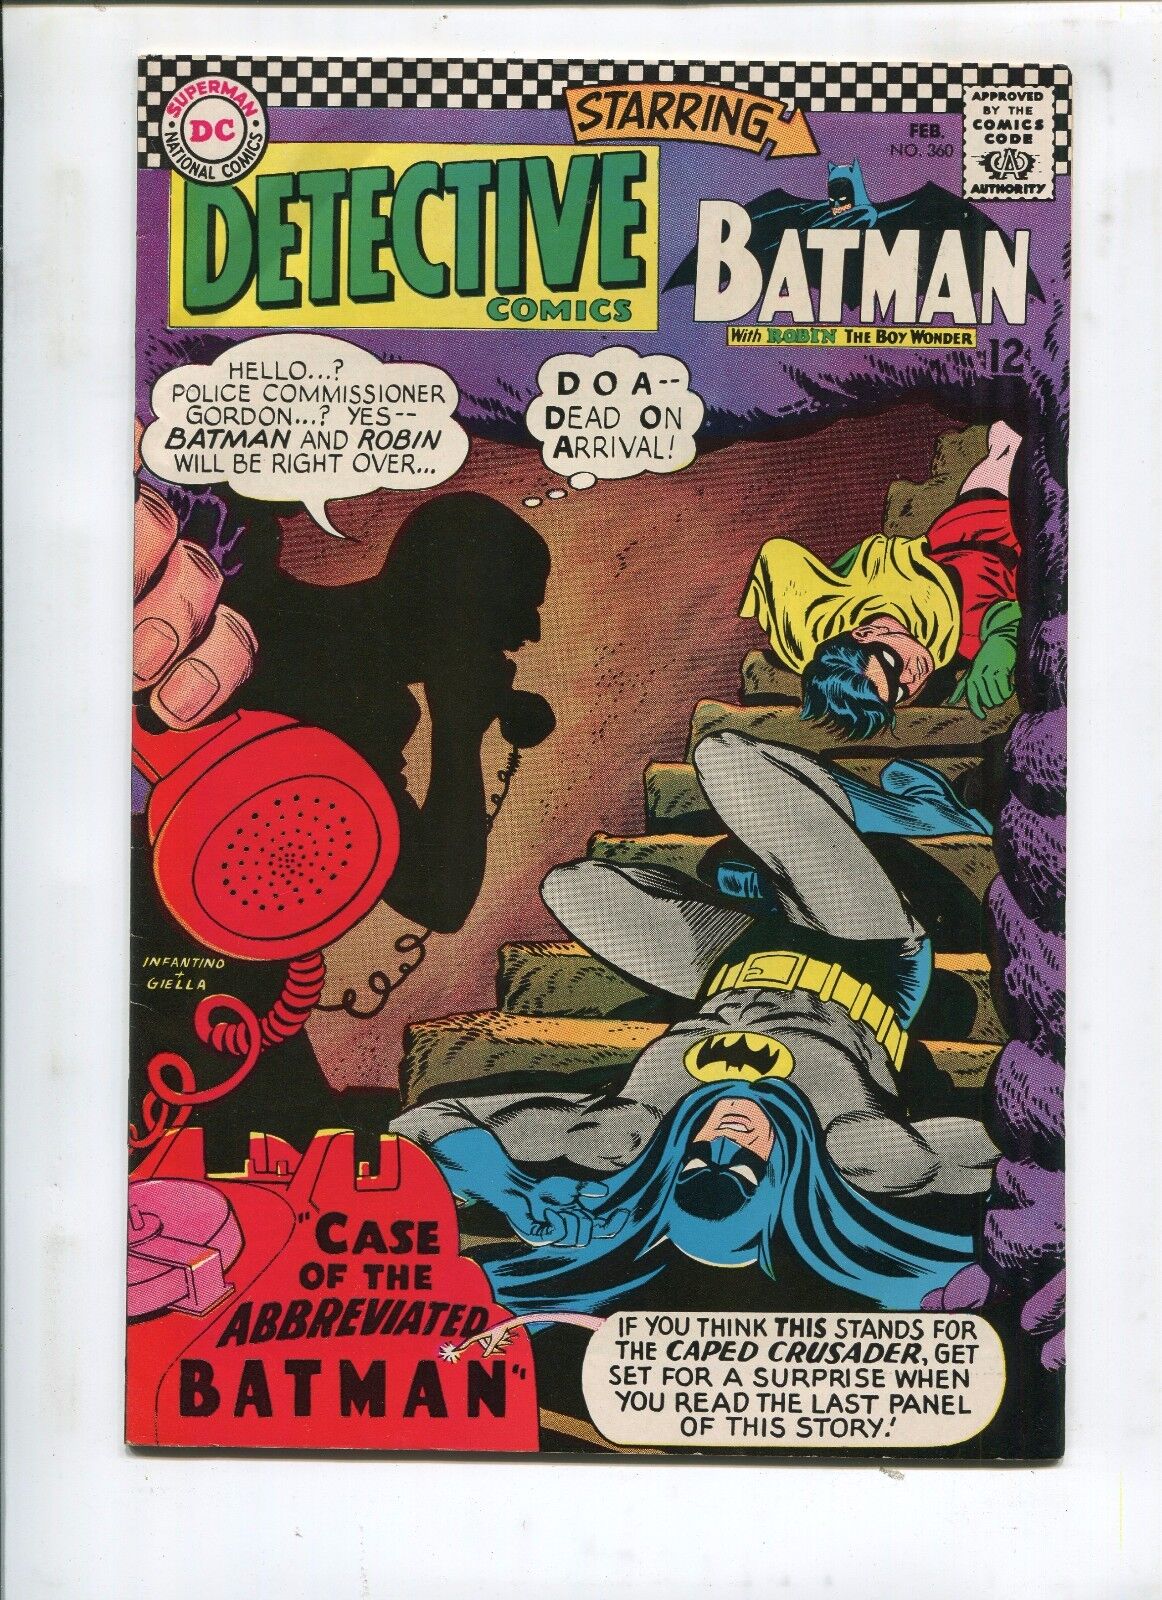 DETECTIVE COMICS #360 -THE CASE OF THE ABBREVIATED BATMAN - (8.0) 1967